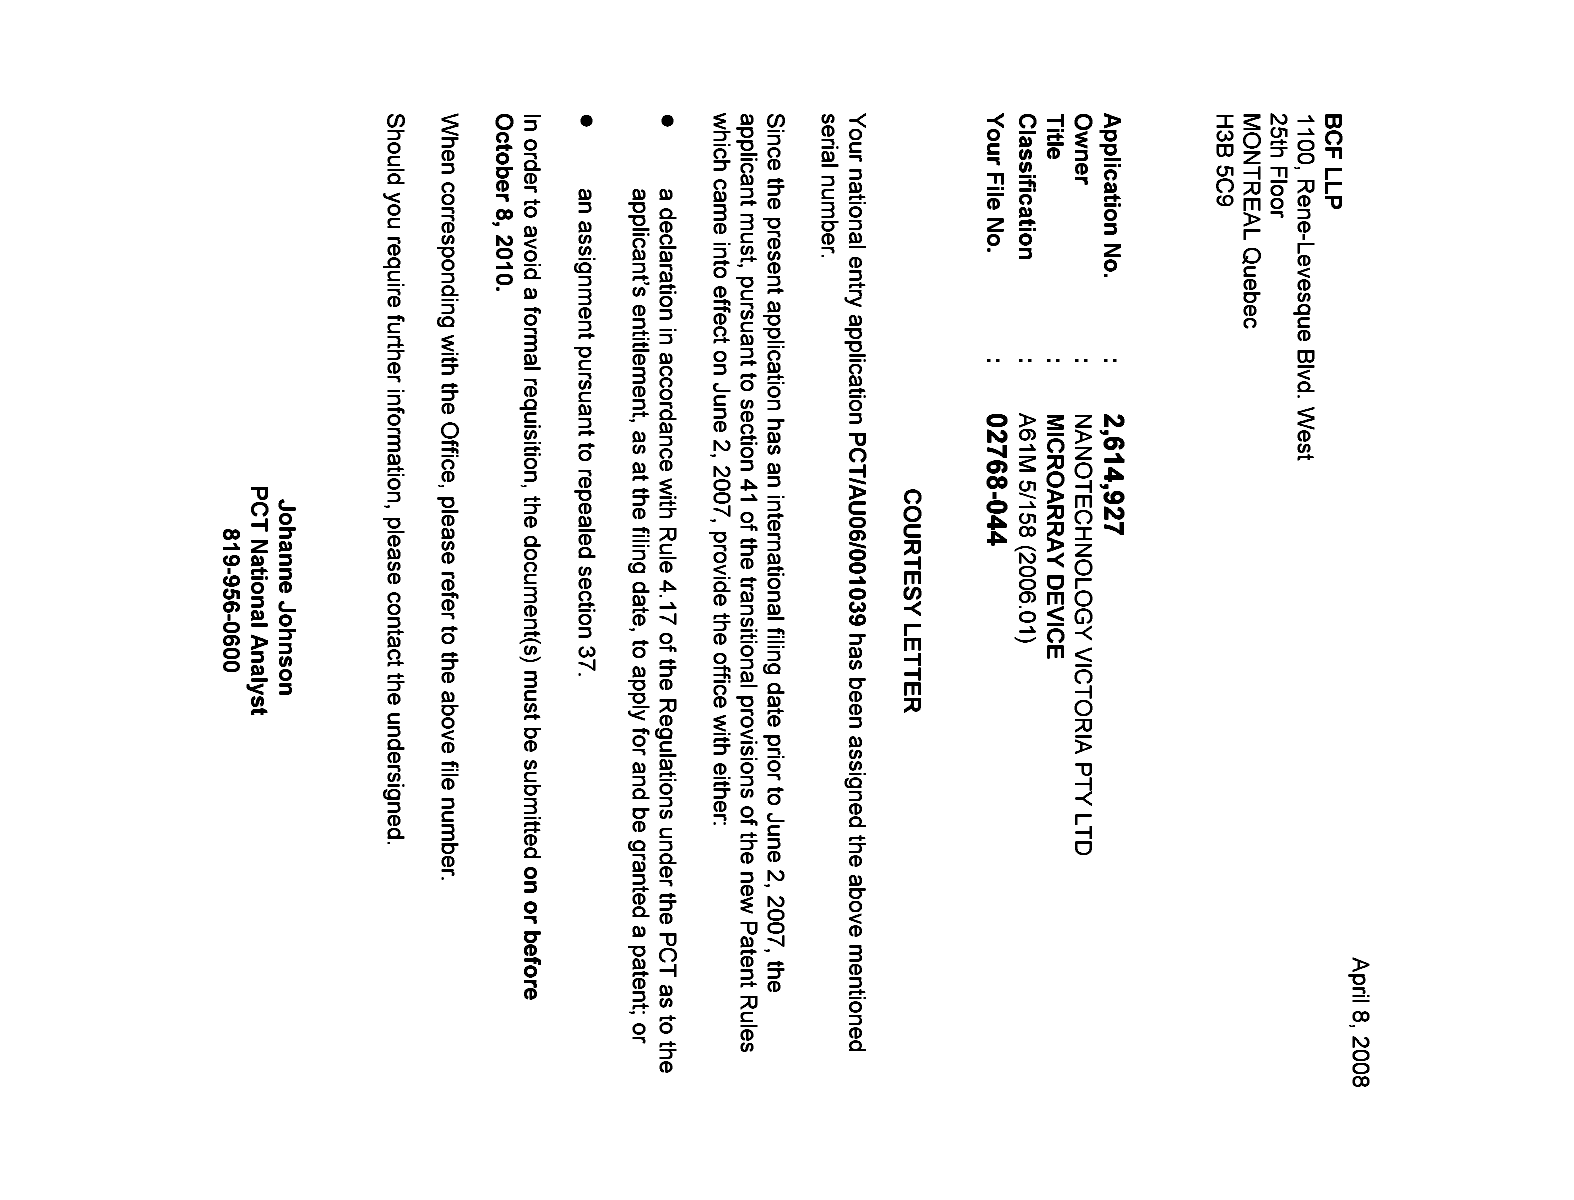 Document de brevet canadien 2614927. Correspondance 20071208. Image 1 de 1